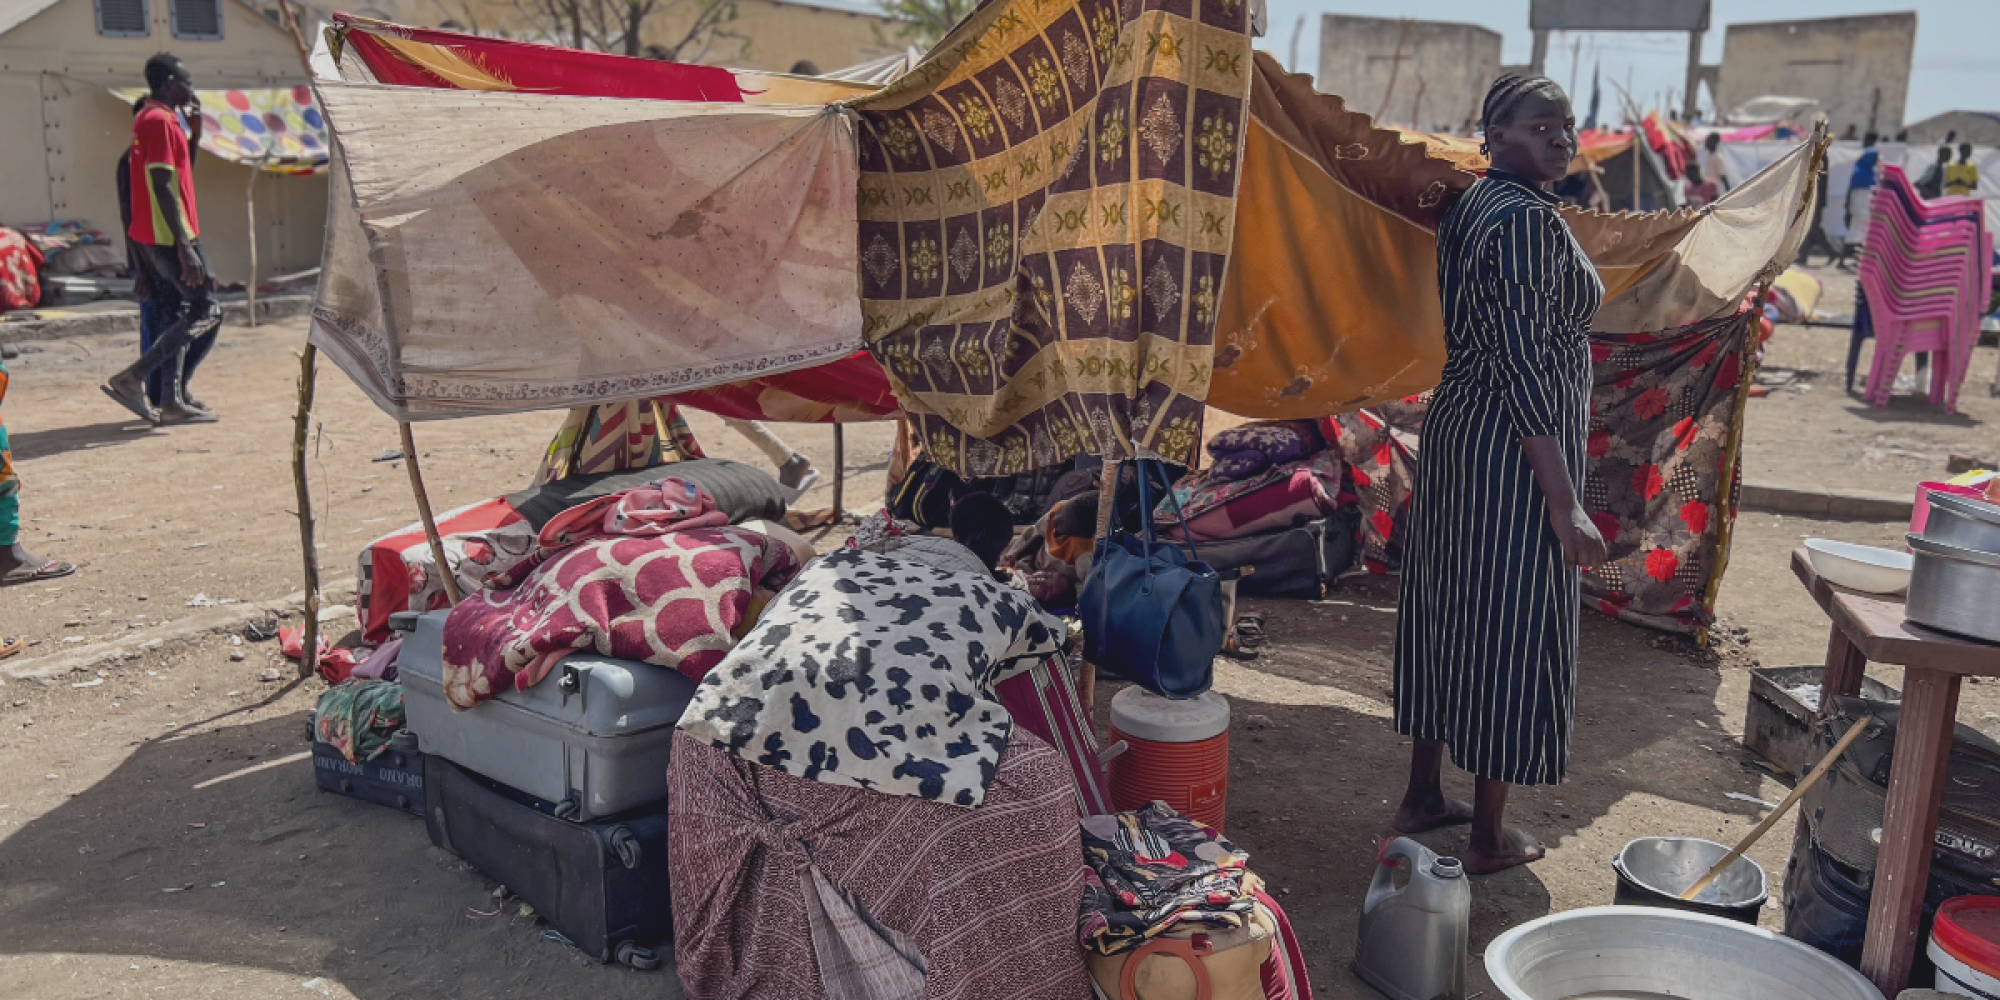 Nous continuons à suivre l’évolution du conflit au Soudan, qui dévaste le pays et force des milliers de personnes à fuir leurs maisons.